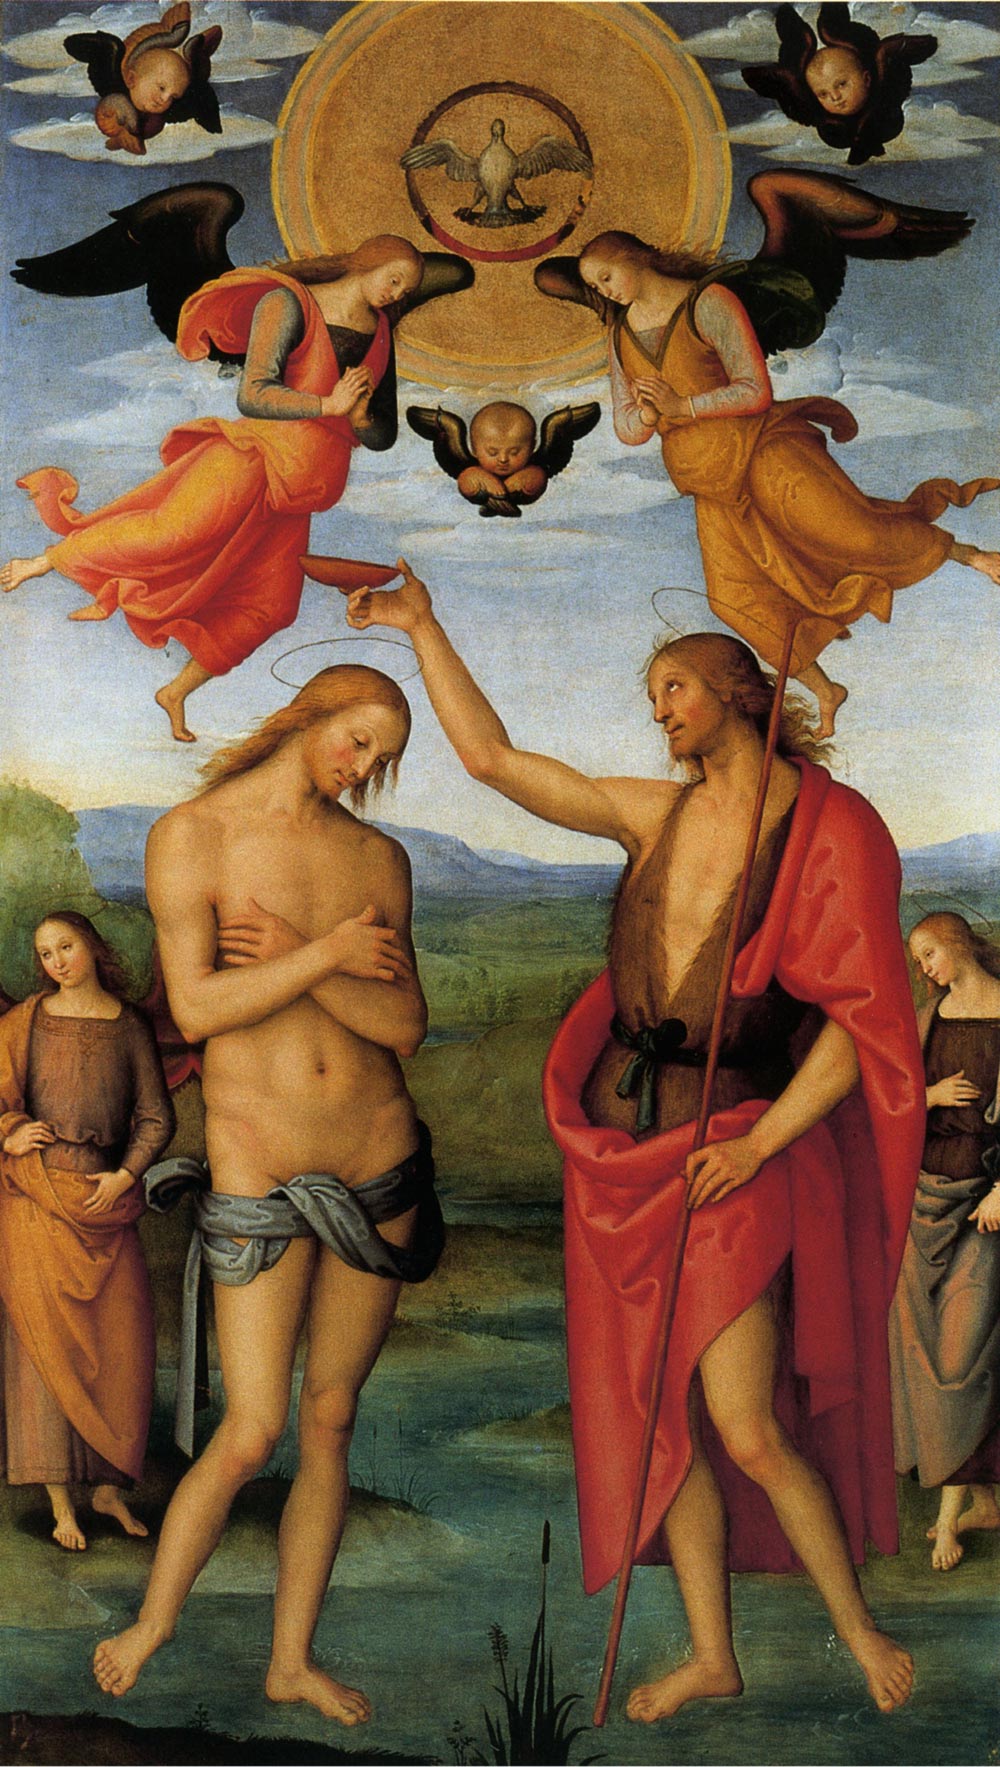 Perugino, Baptism of Christ (c. 1502-1512; panel, 261 x 146 cm; Perugia, National Gallery of Umbria)